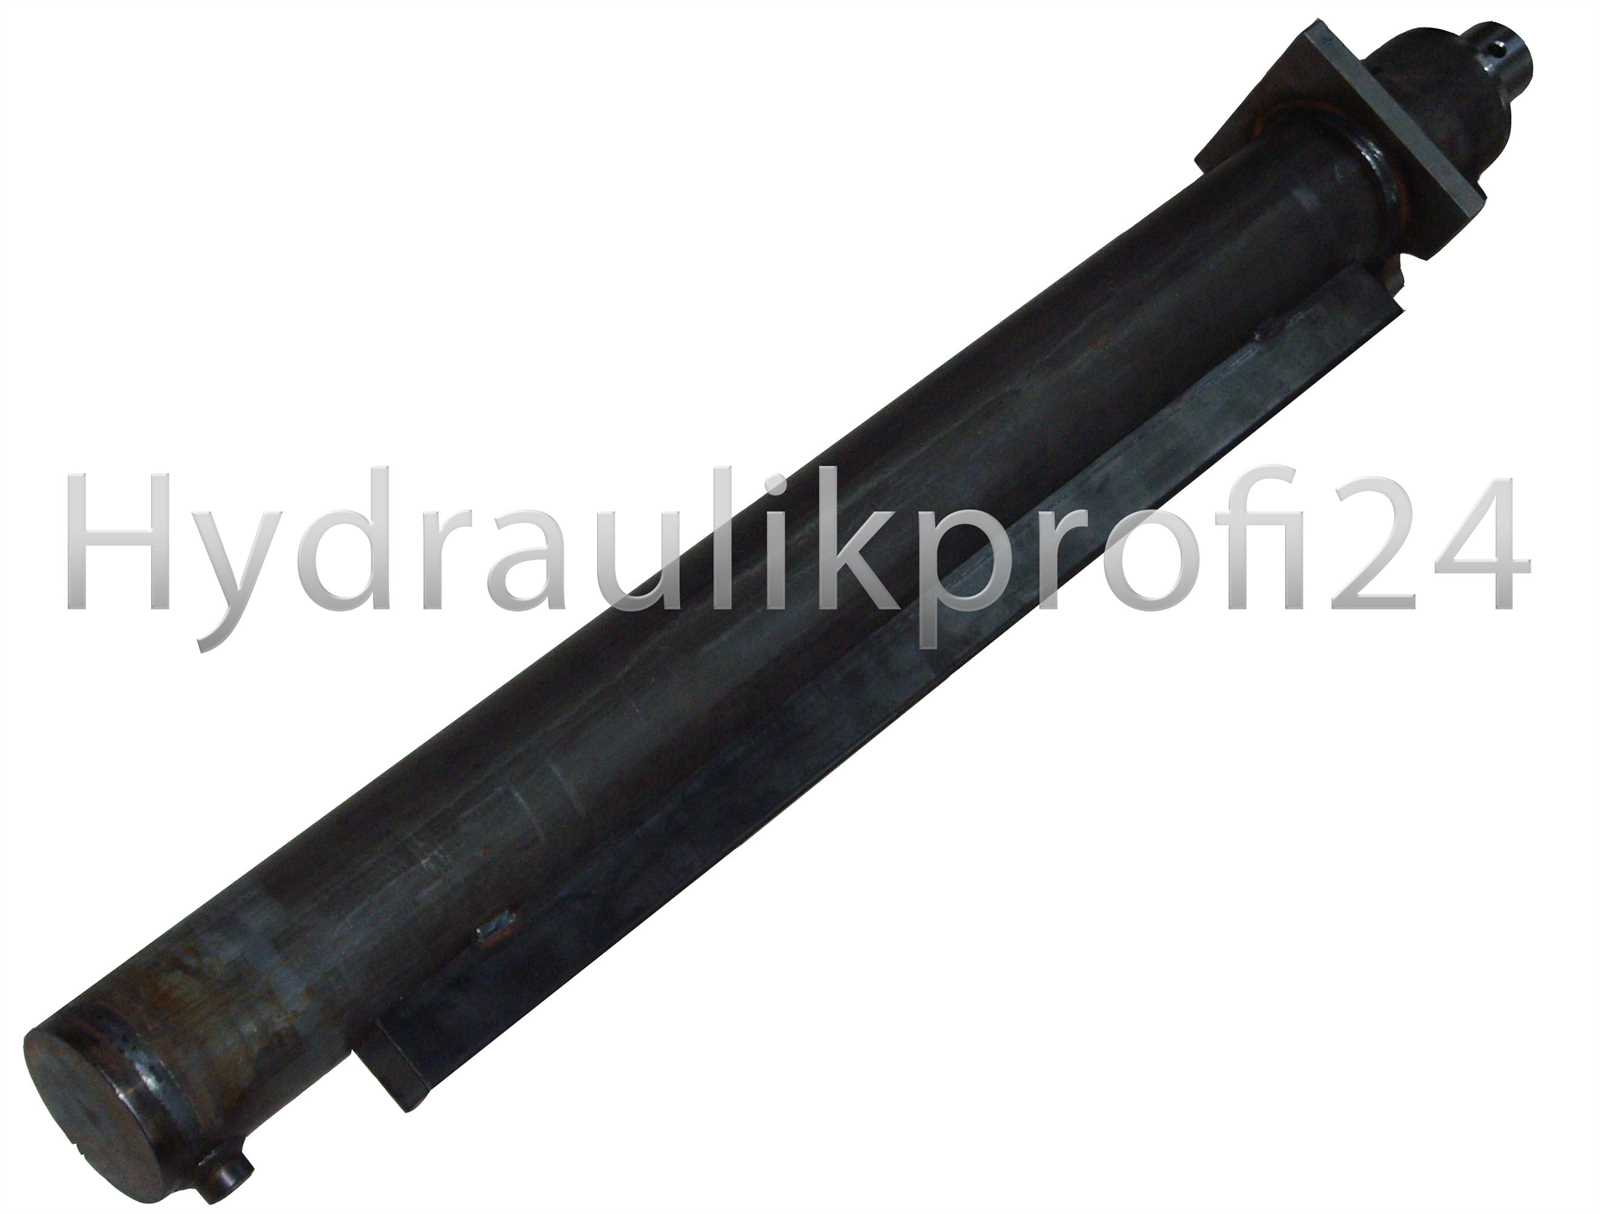 Hydraulikzylinder Holzspalterzylinder  80-120-1300 ohne Befestigung  mit Flansch